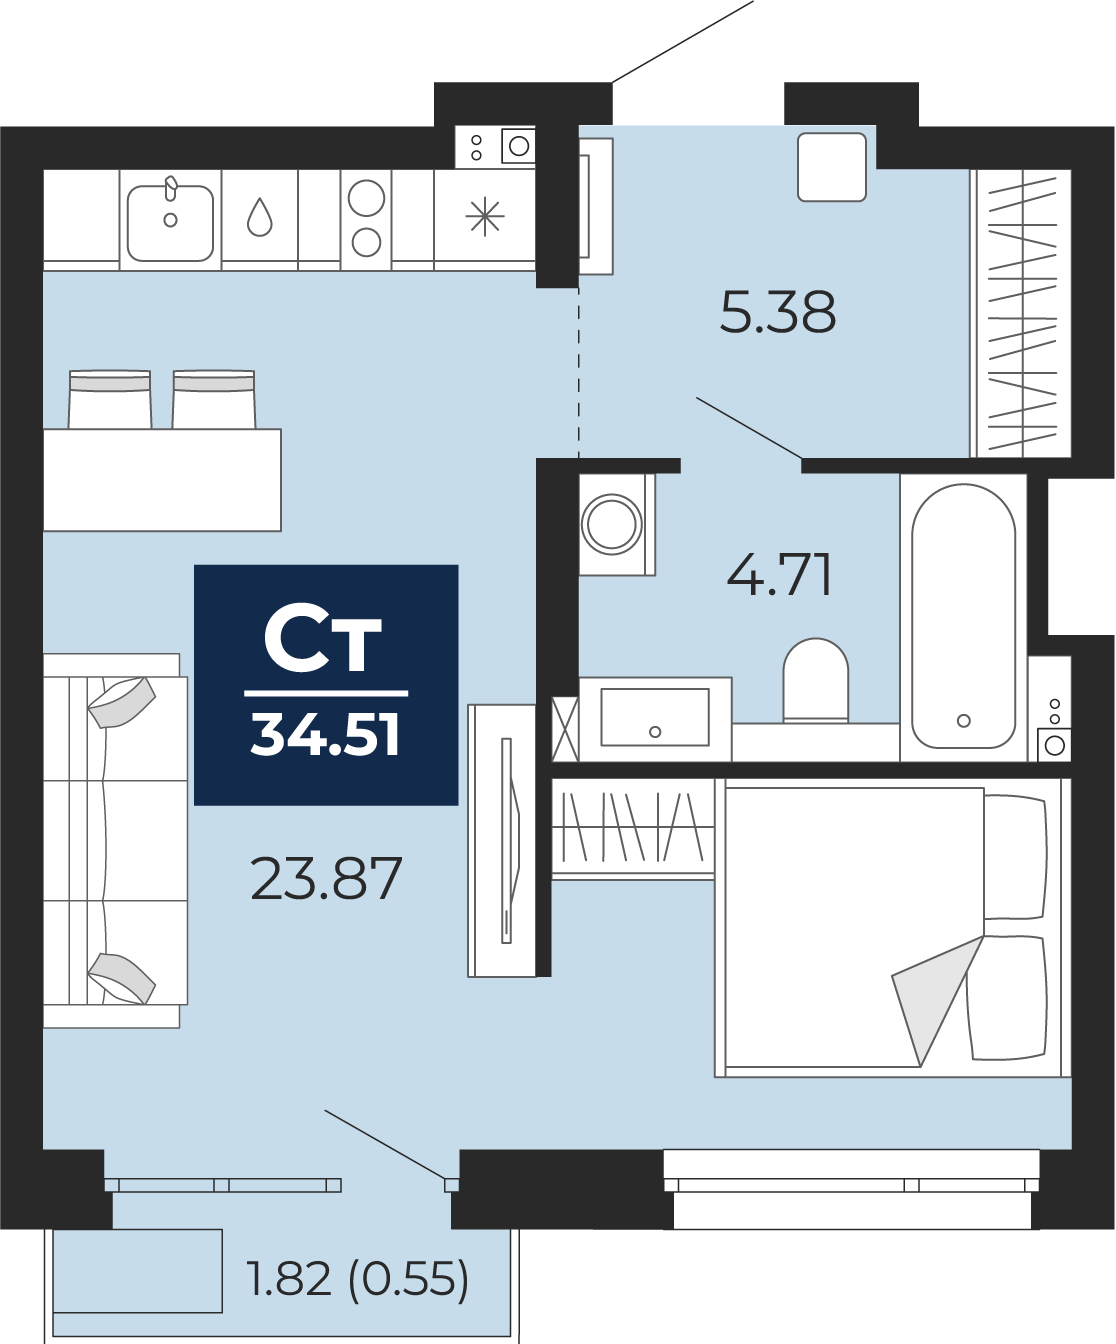 Квартира № 379, Студия, 34.51 кв. м, 10 этаж